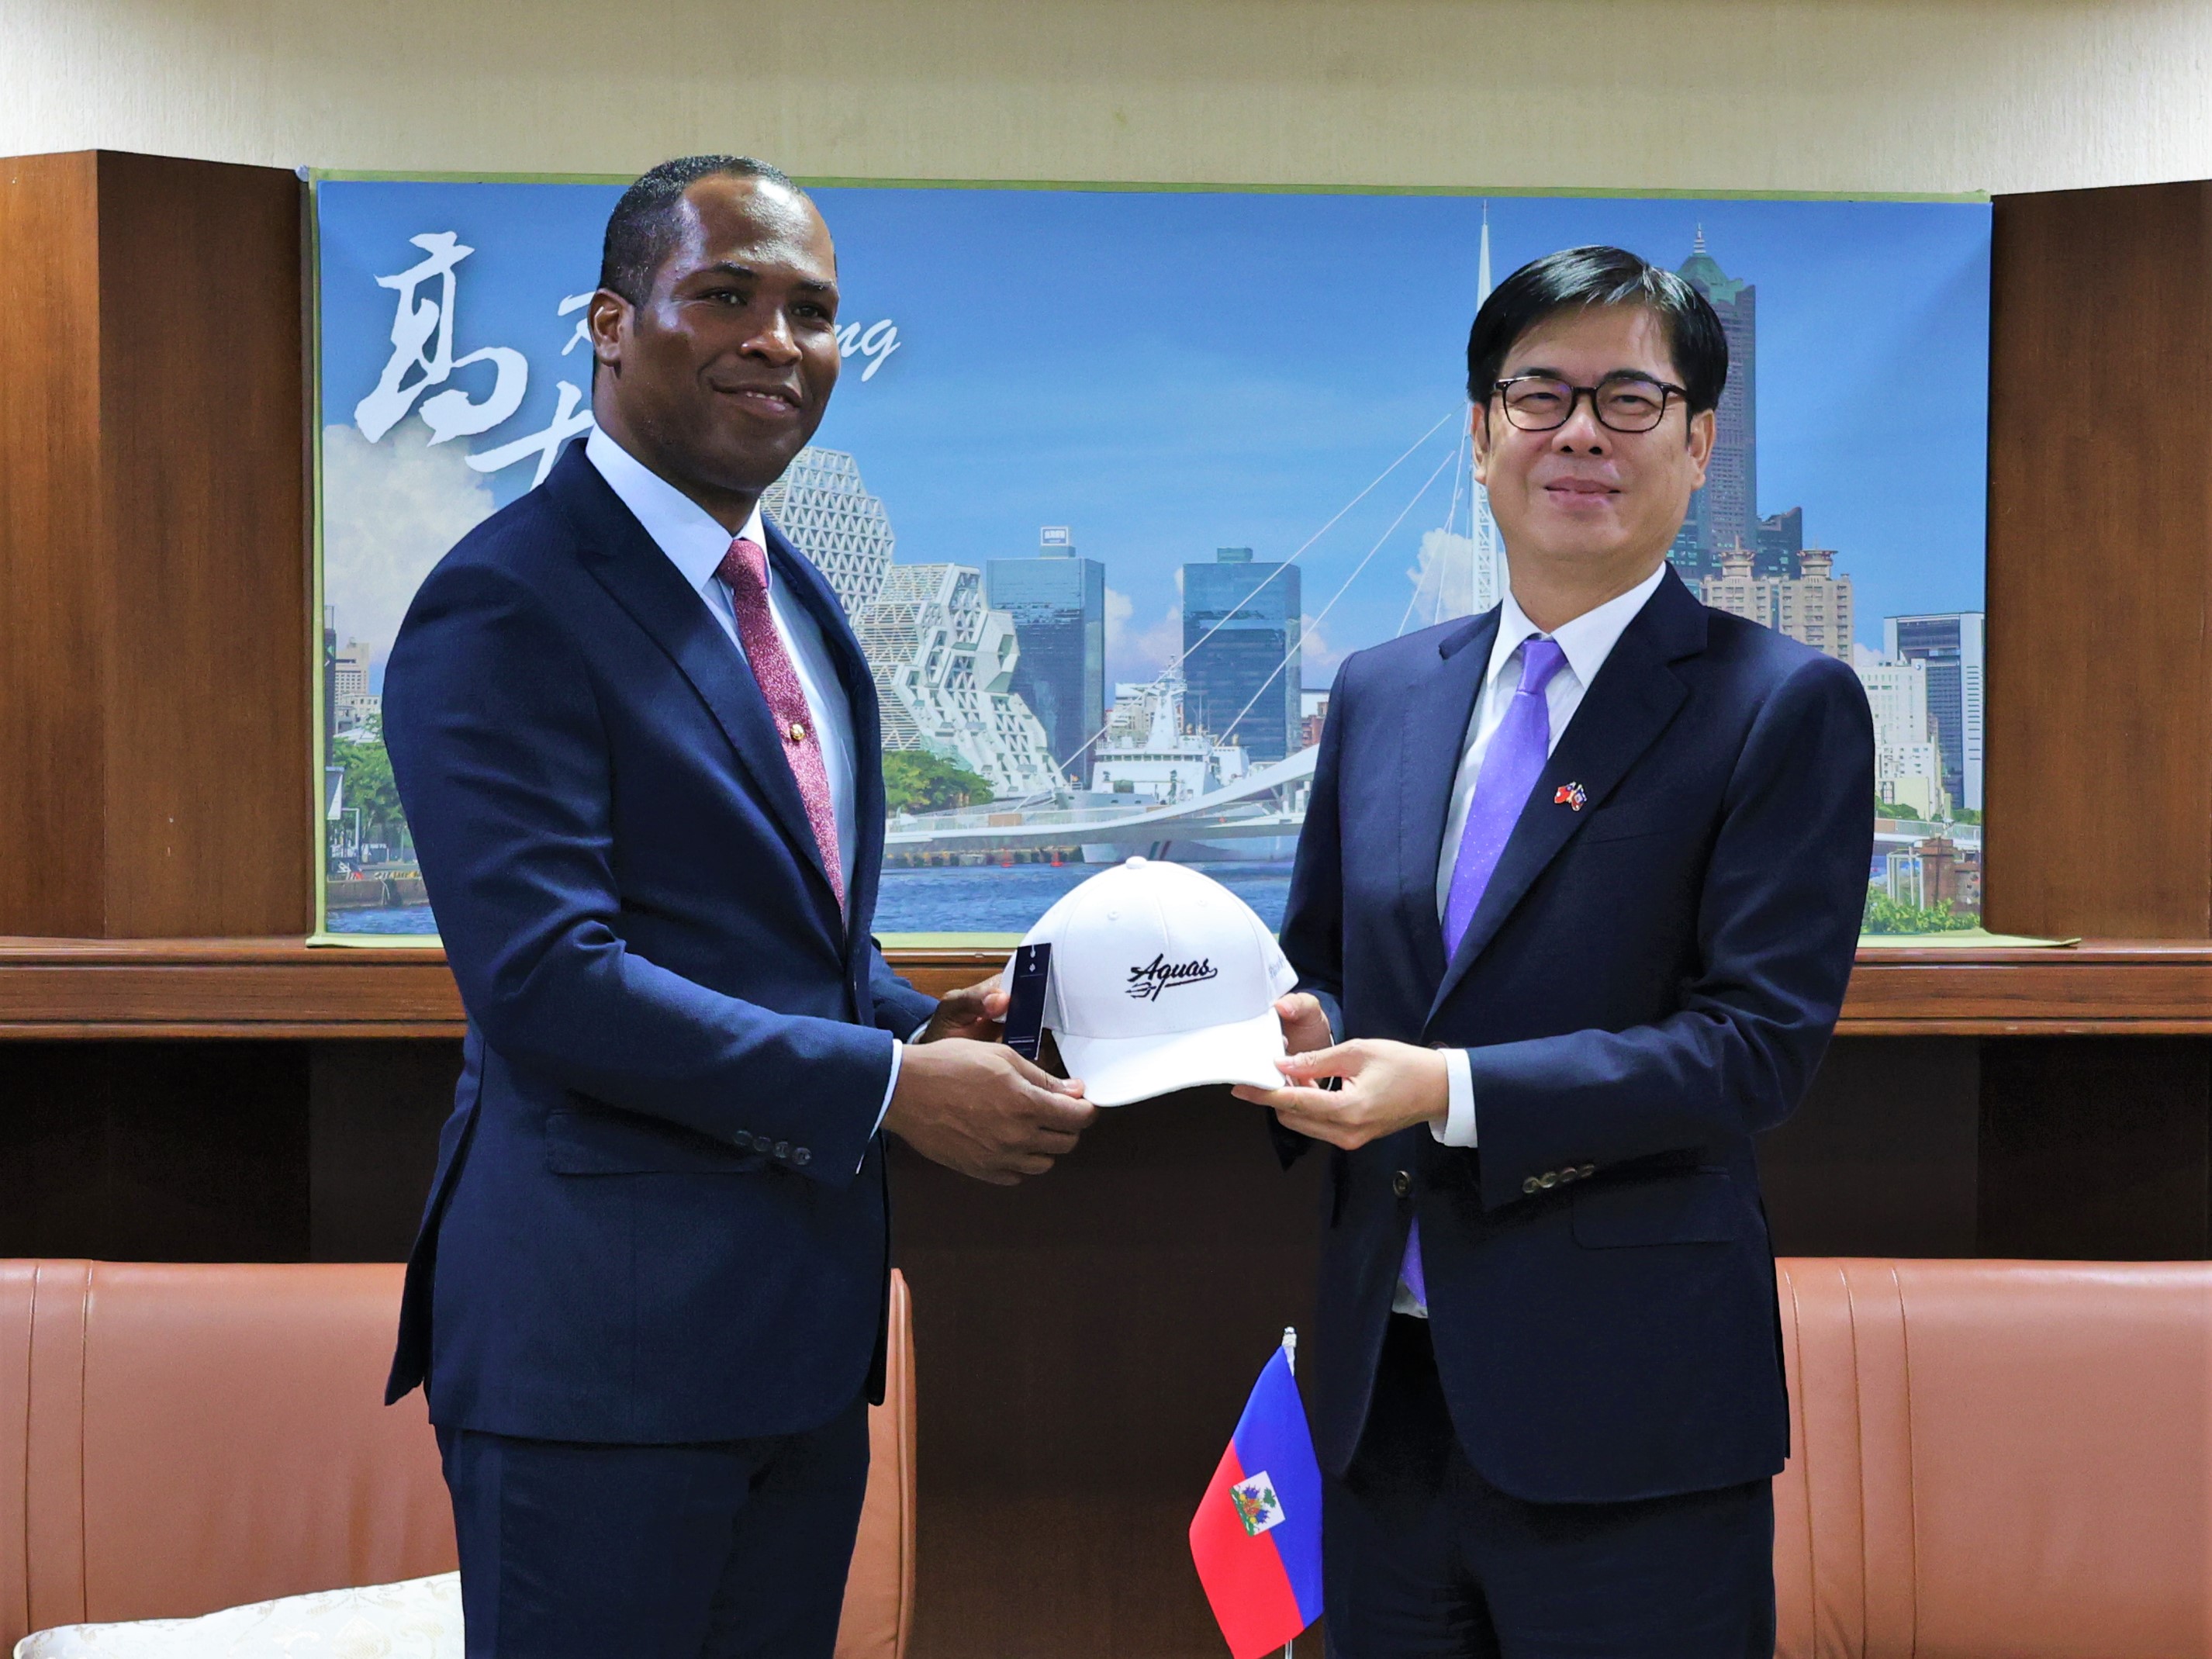 陳其邁市長致贈高雄全家海神隊球帽予熱愛運動的潘恩大使